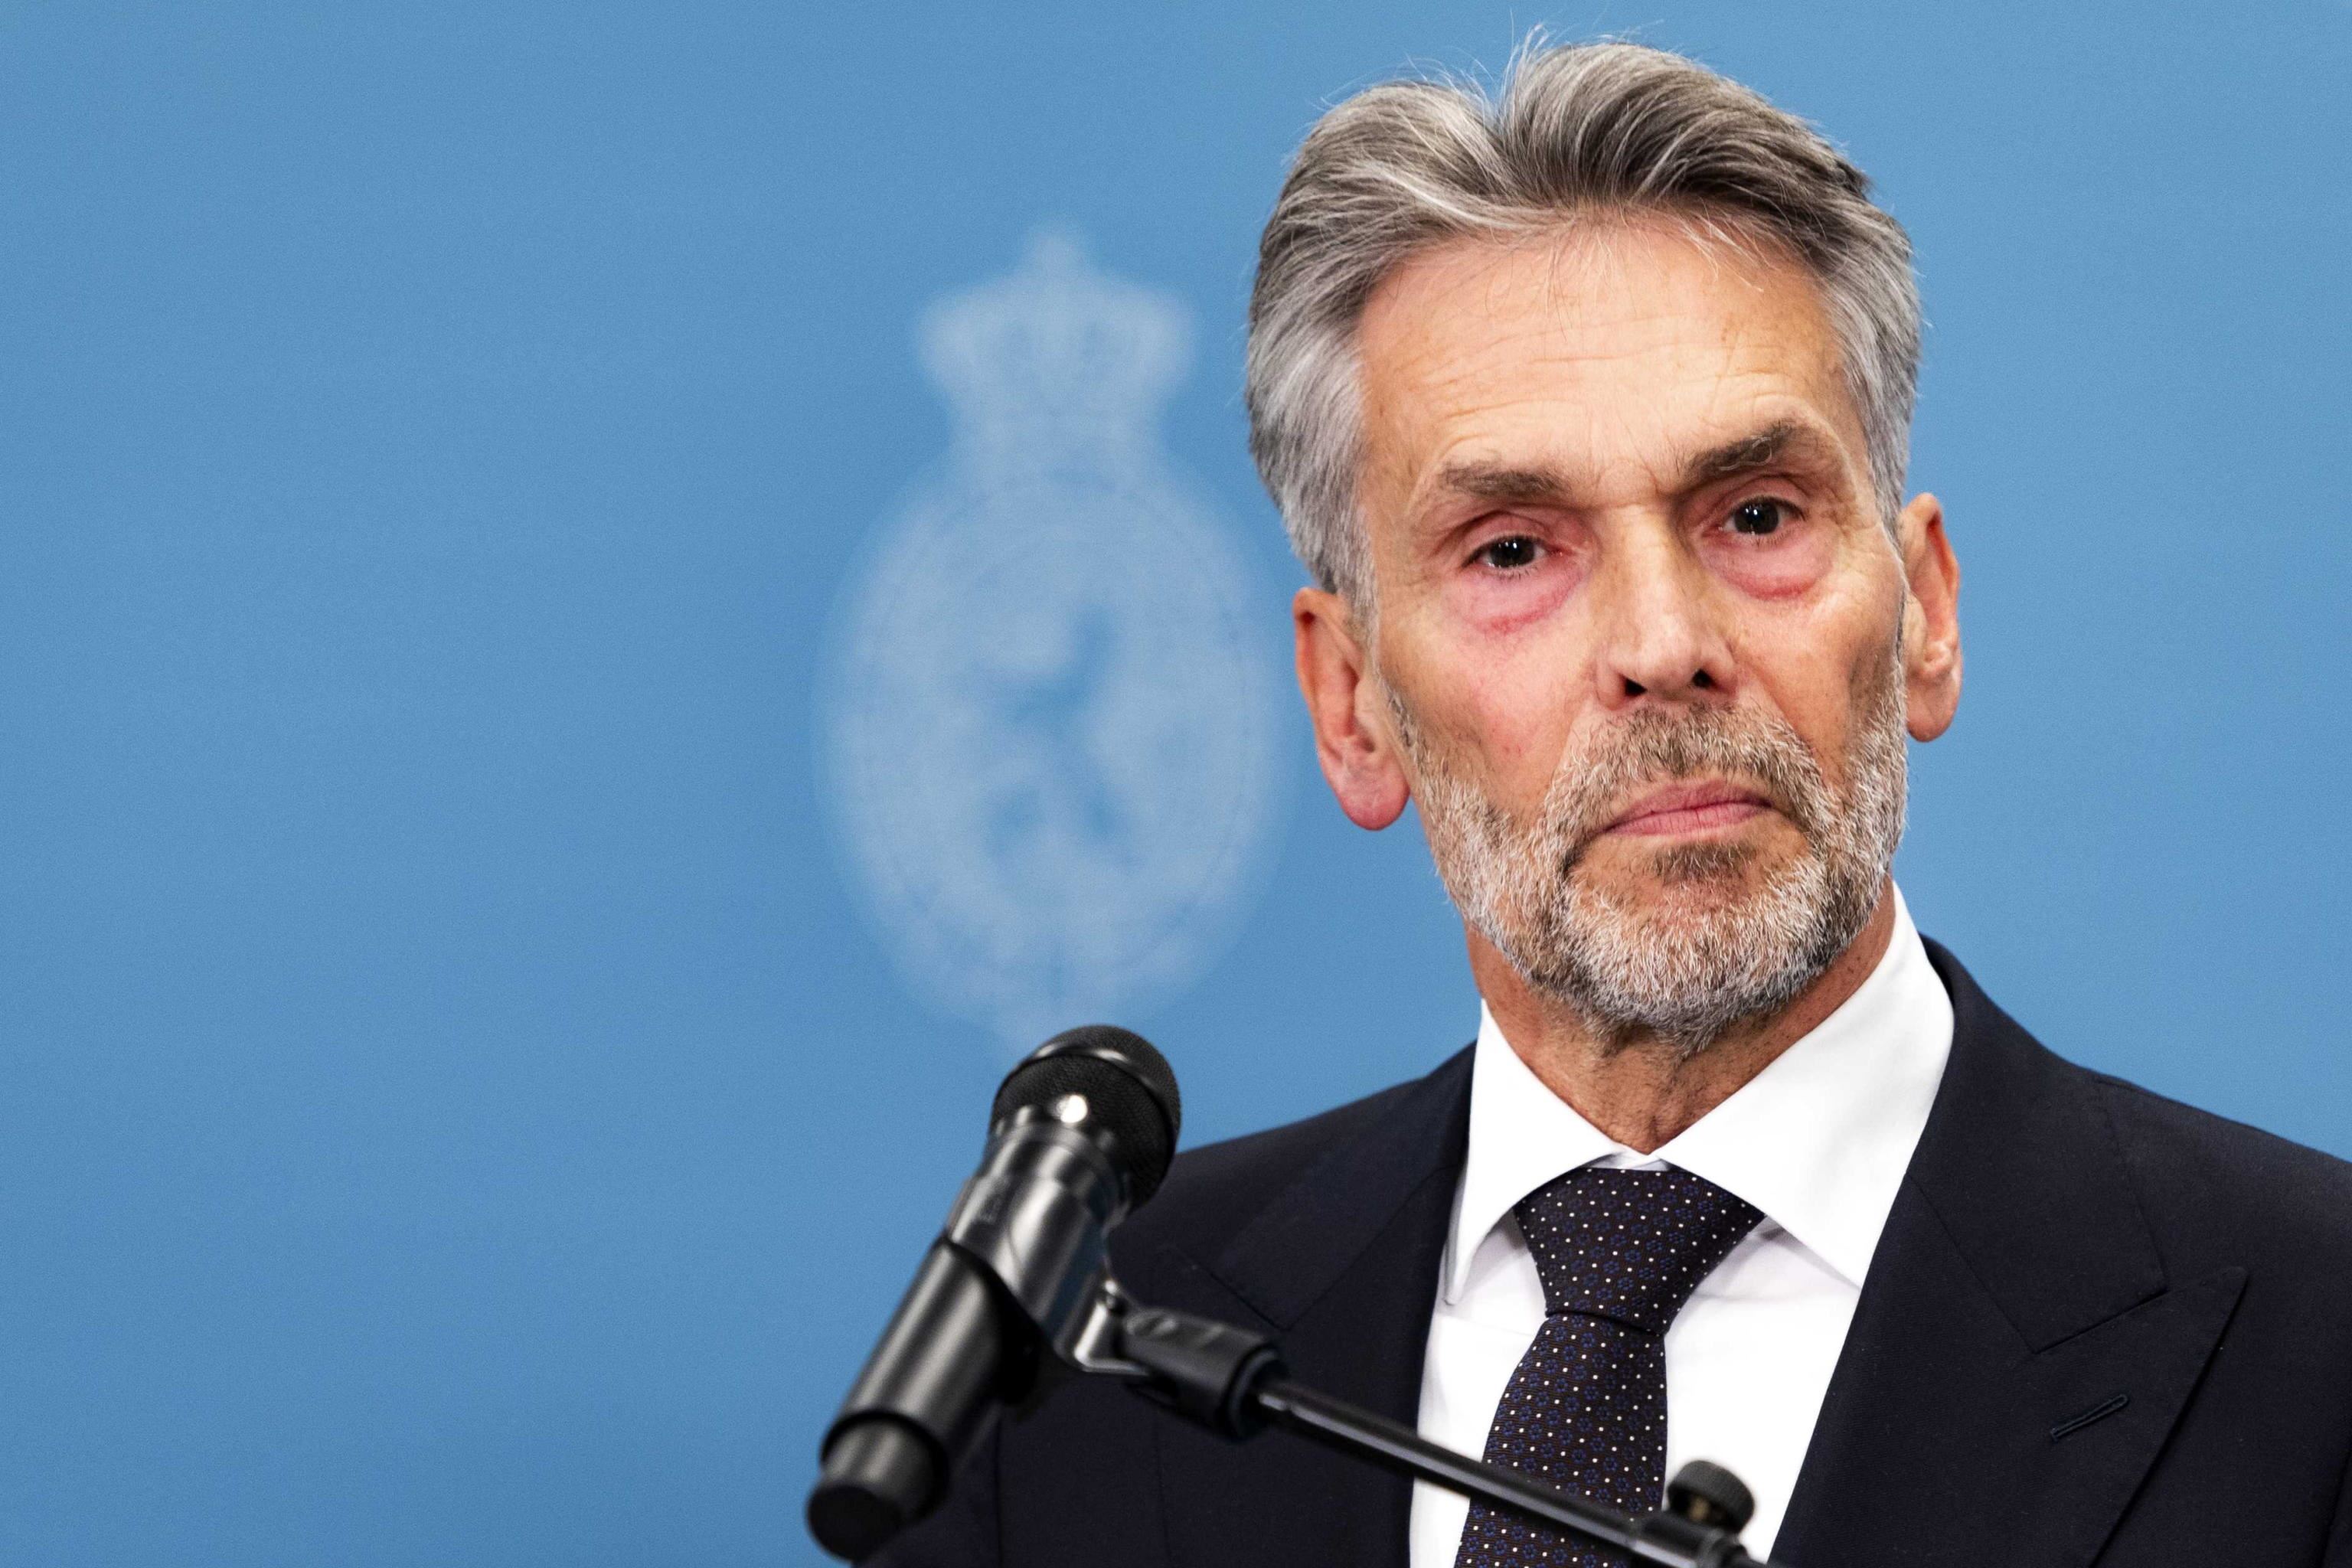 L'ex capo dei servizi segreti Hendrikus Wilhelmus Maria "Dick" Schoof sarà il premier dei Paesi Bassi